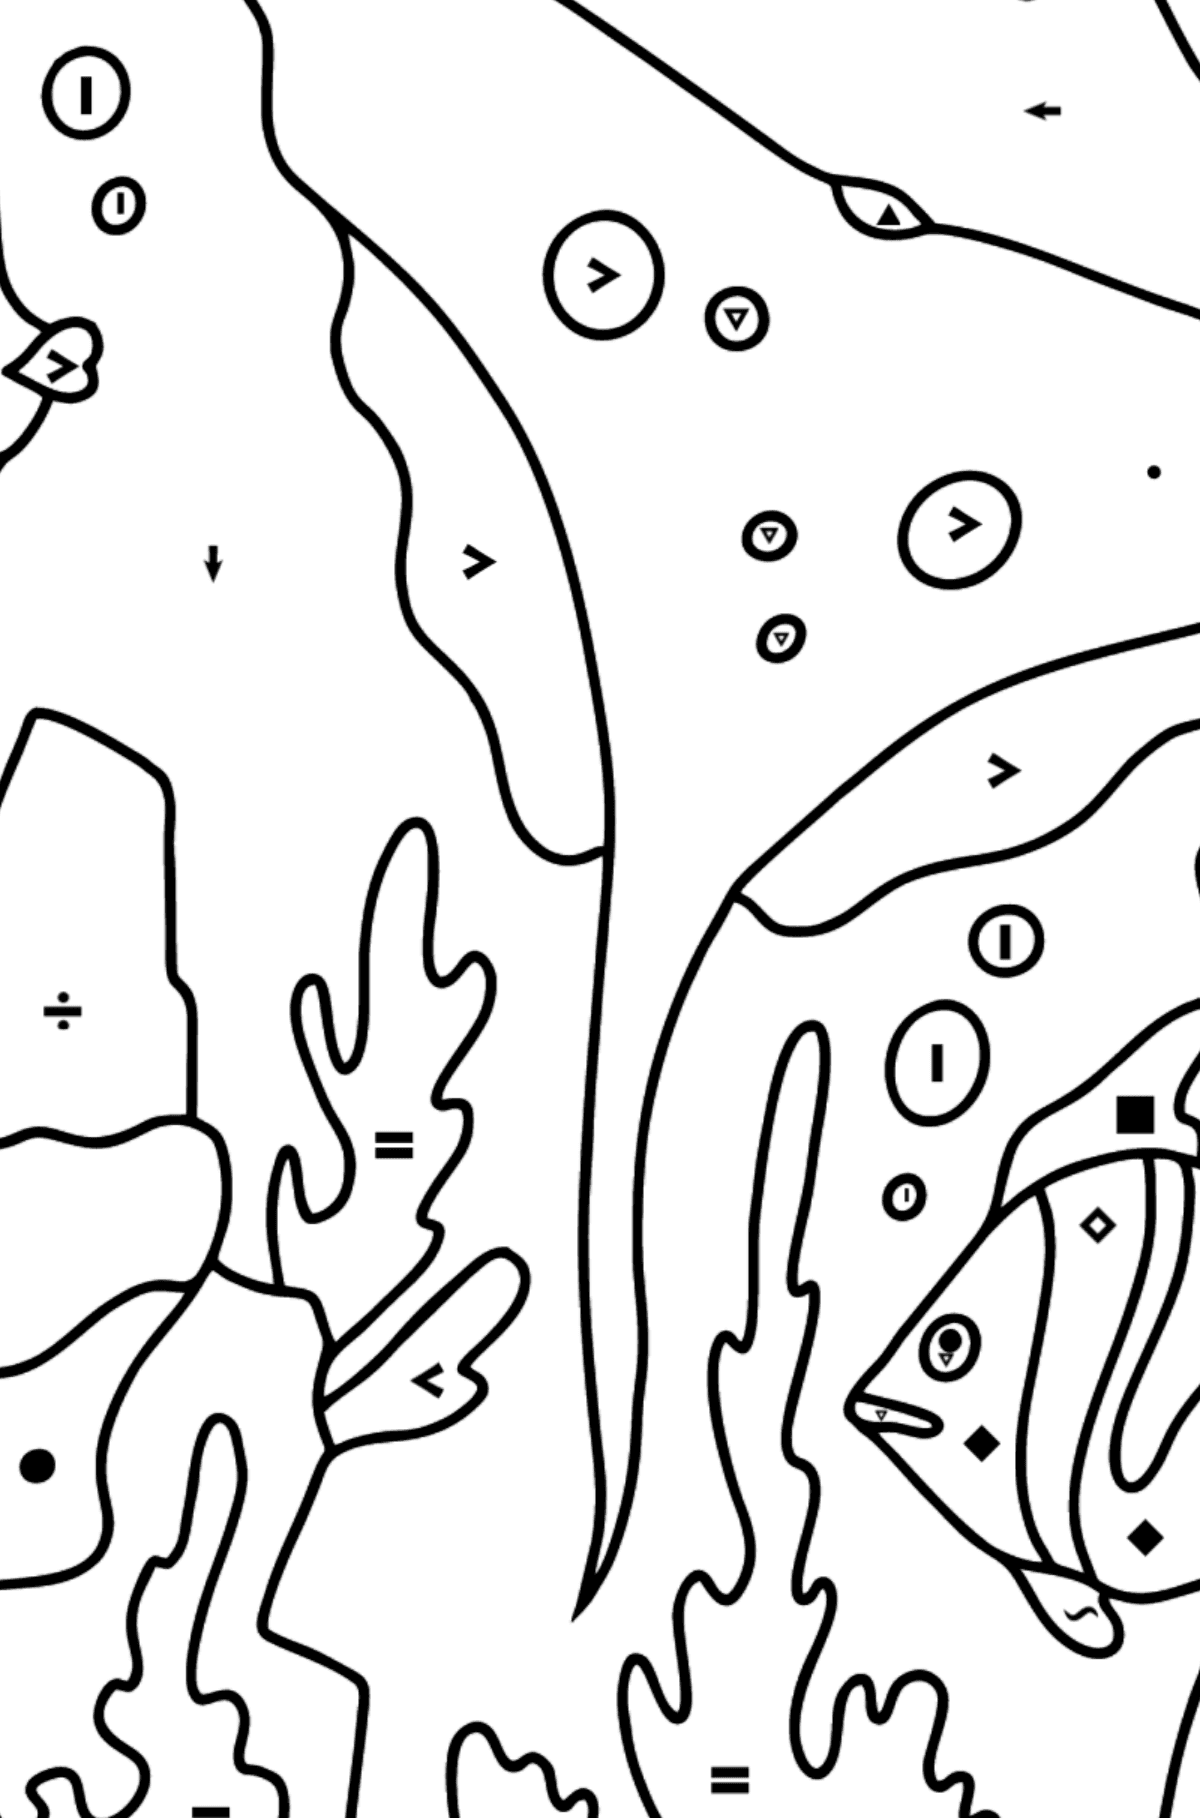 Målarbild fisk och en stingrocka (svår) - Färgläggning efter symboler För barn